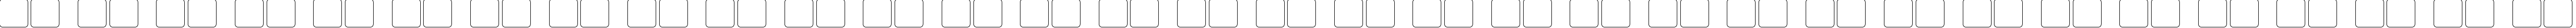 Пример написания русского алфавита шрифтом Manga